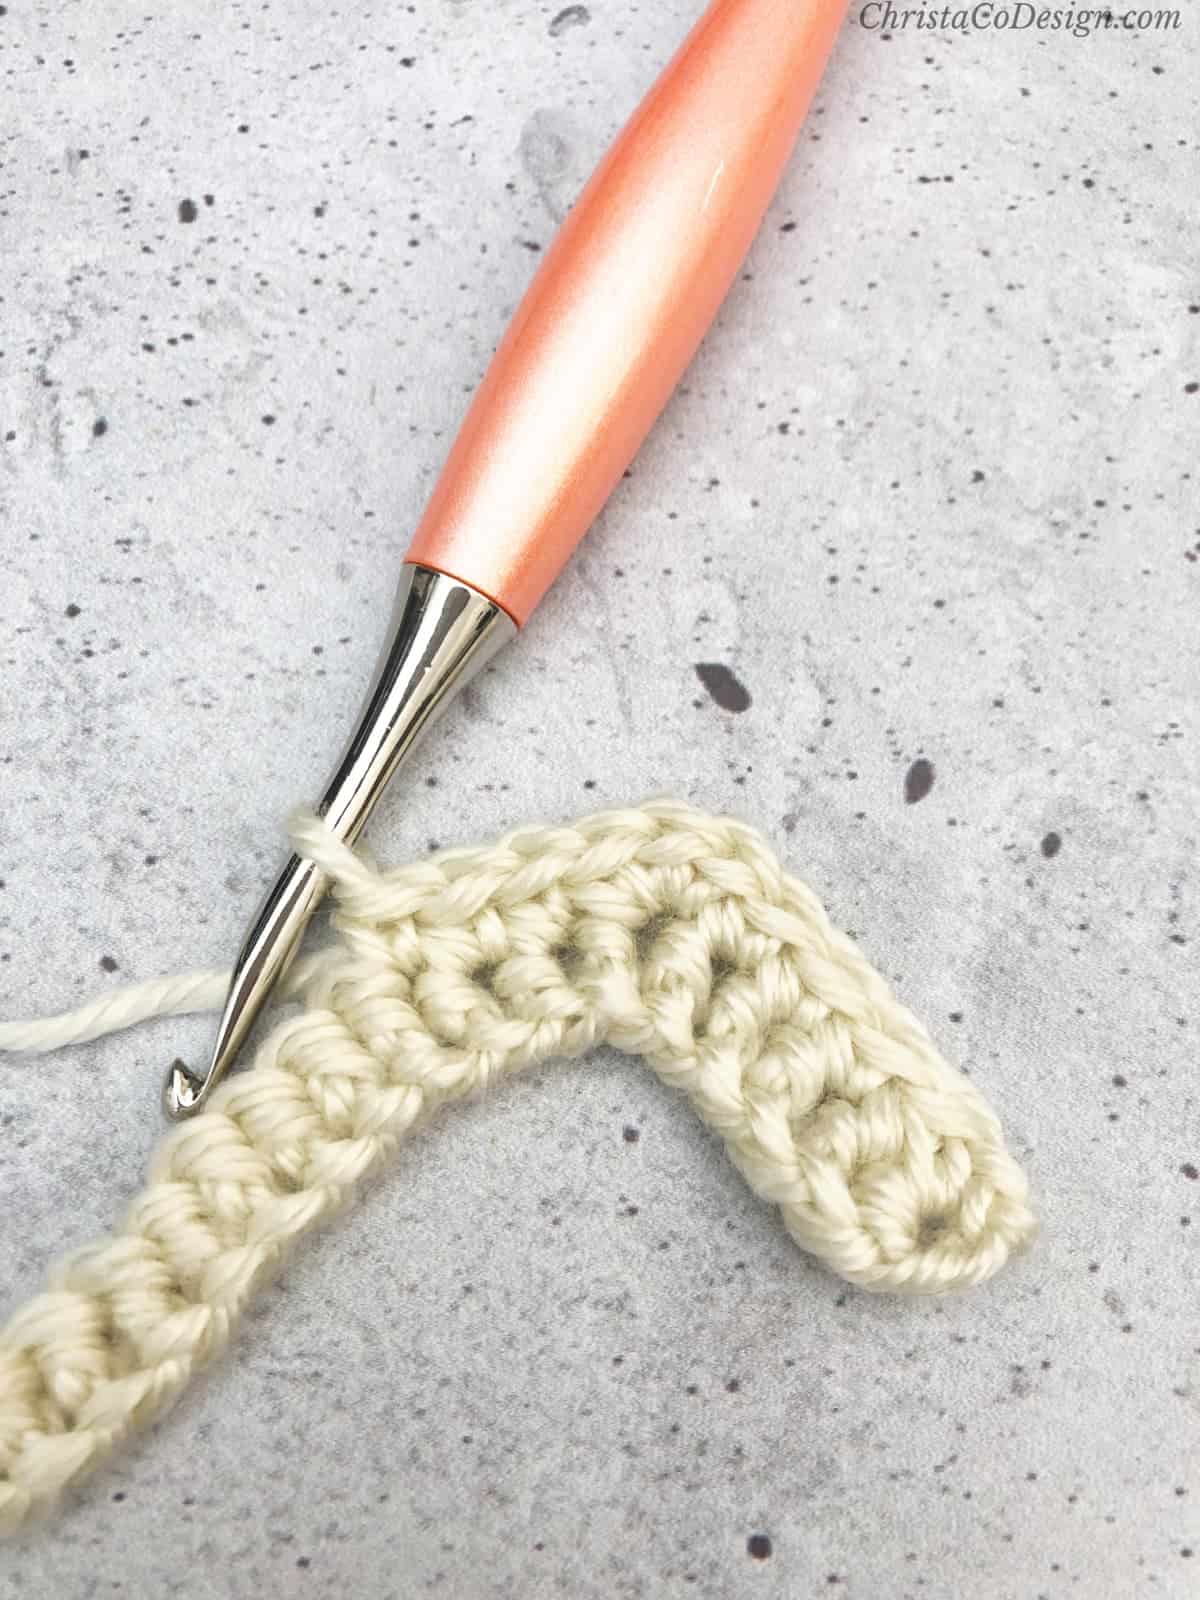 3 single crochets down from peak.